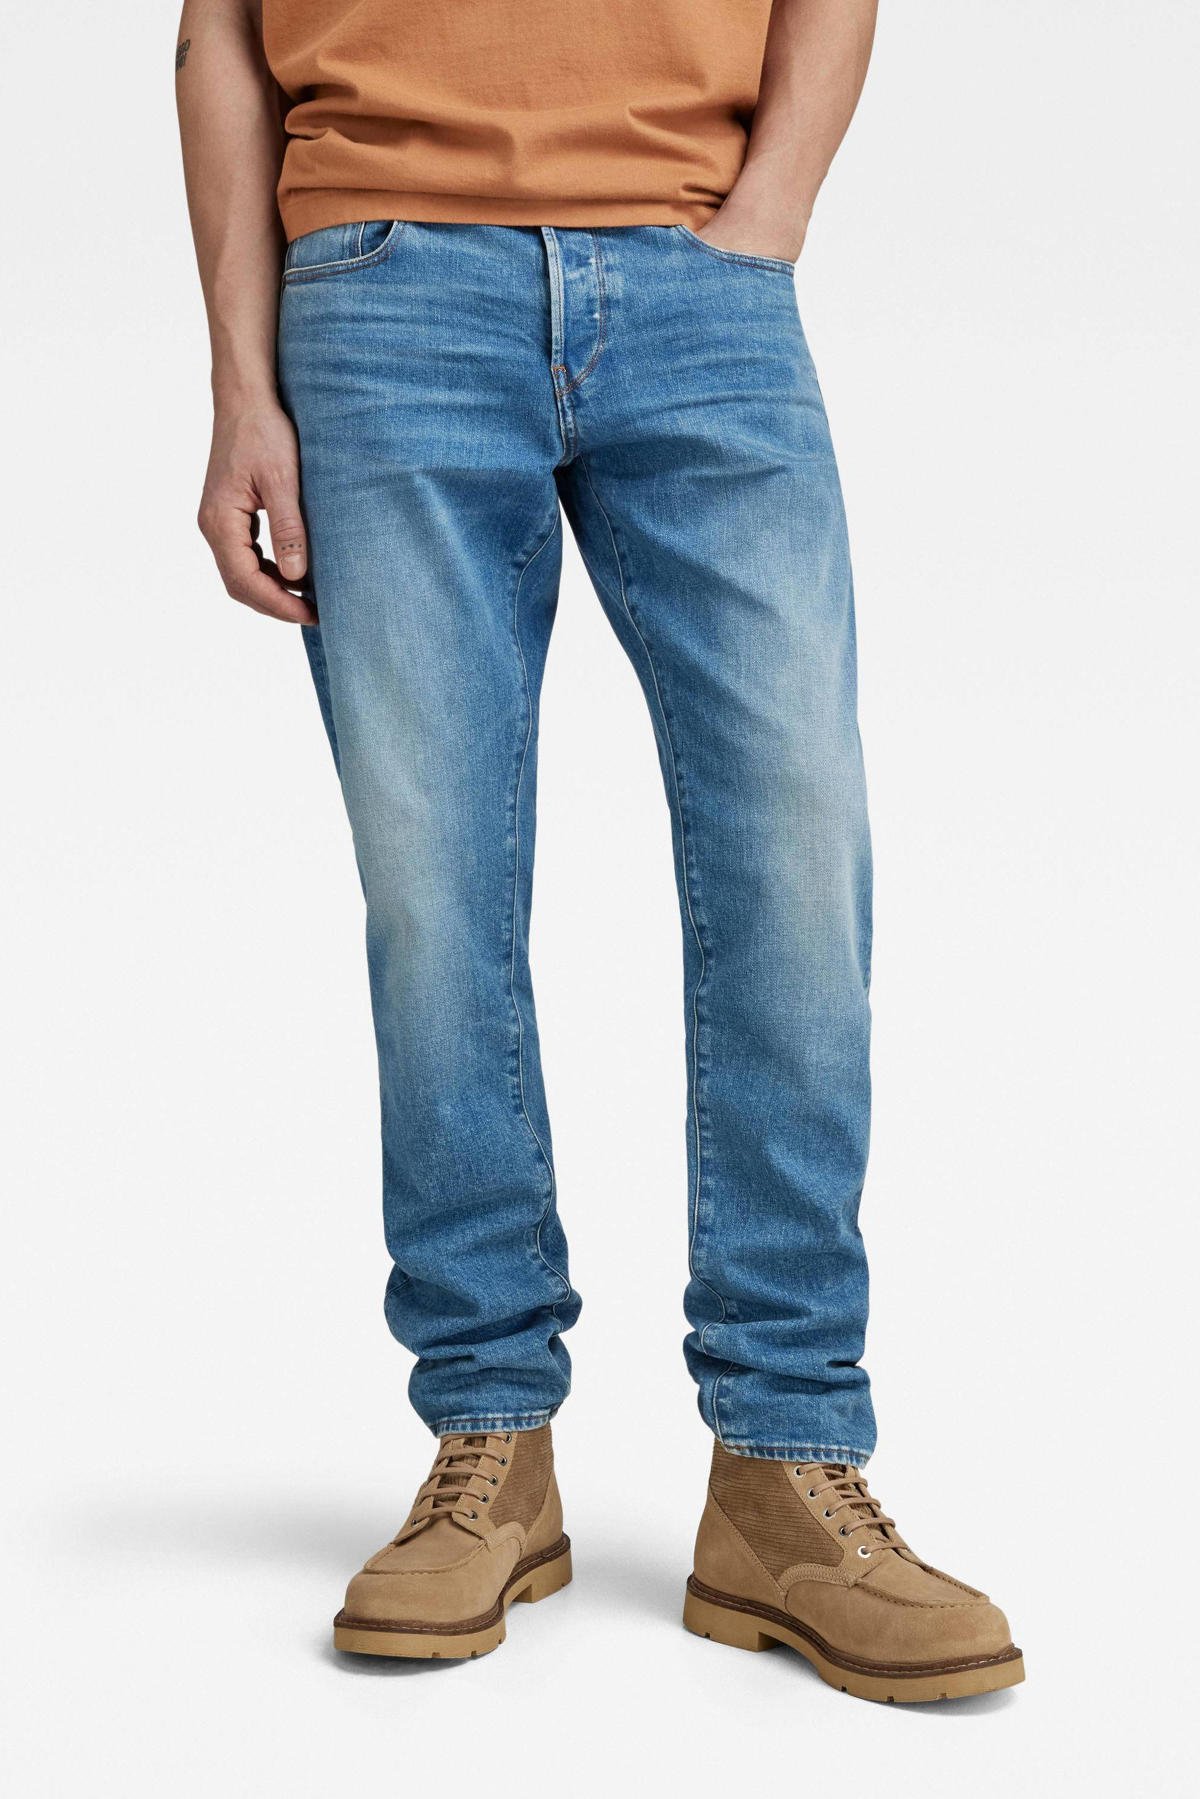 Huiswerk maken Strikt Suradam G-Star RAW 3301 straight tapered fit jeans worn in azure | wehkamp